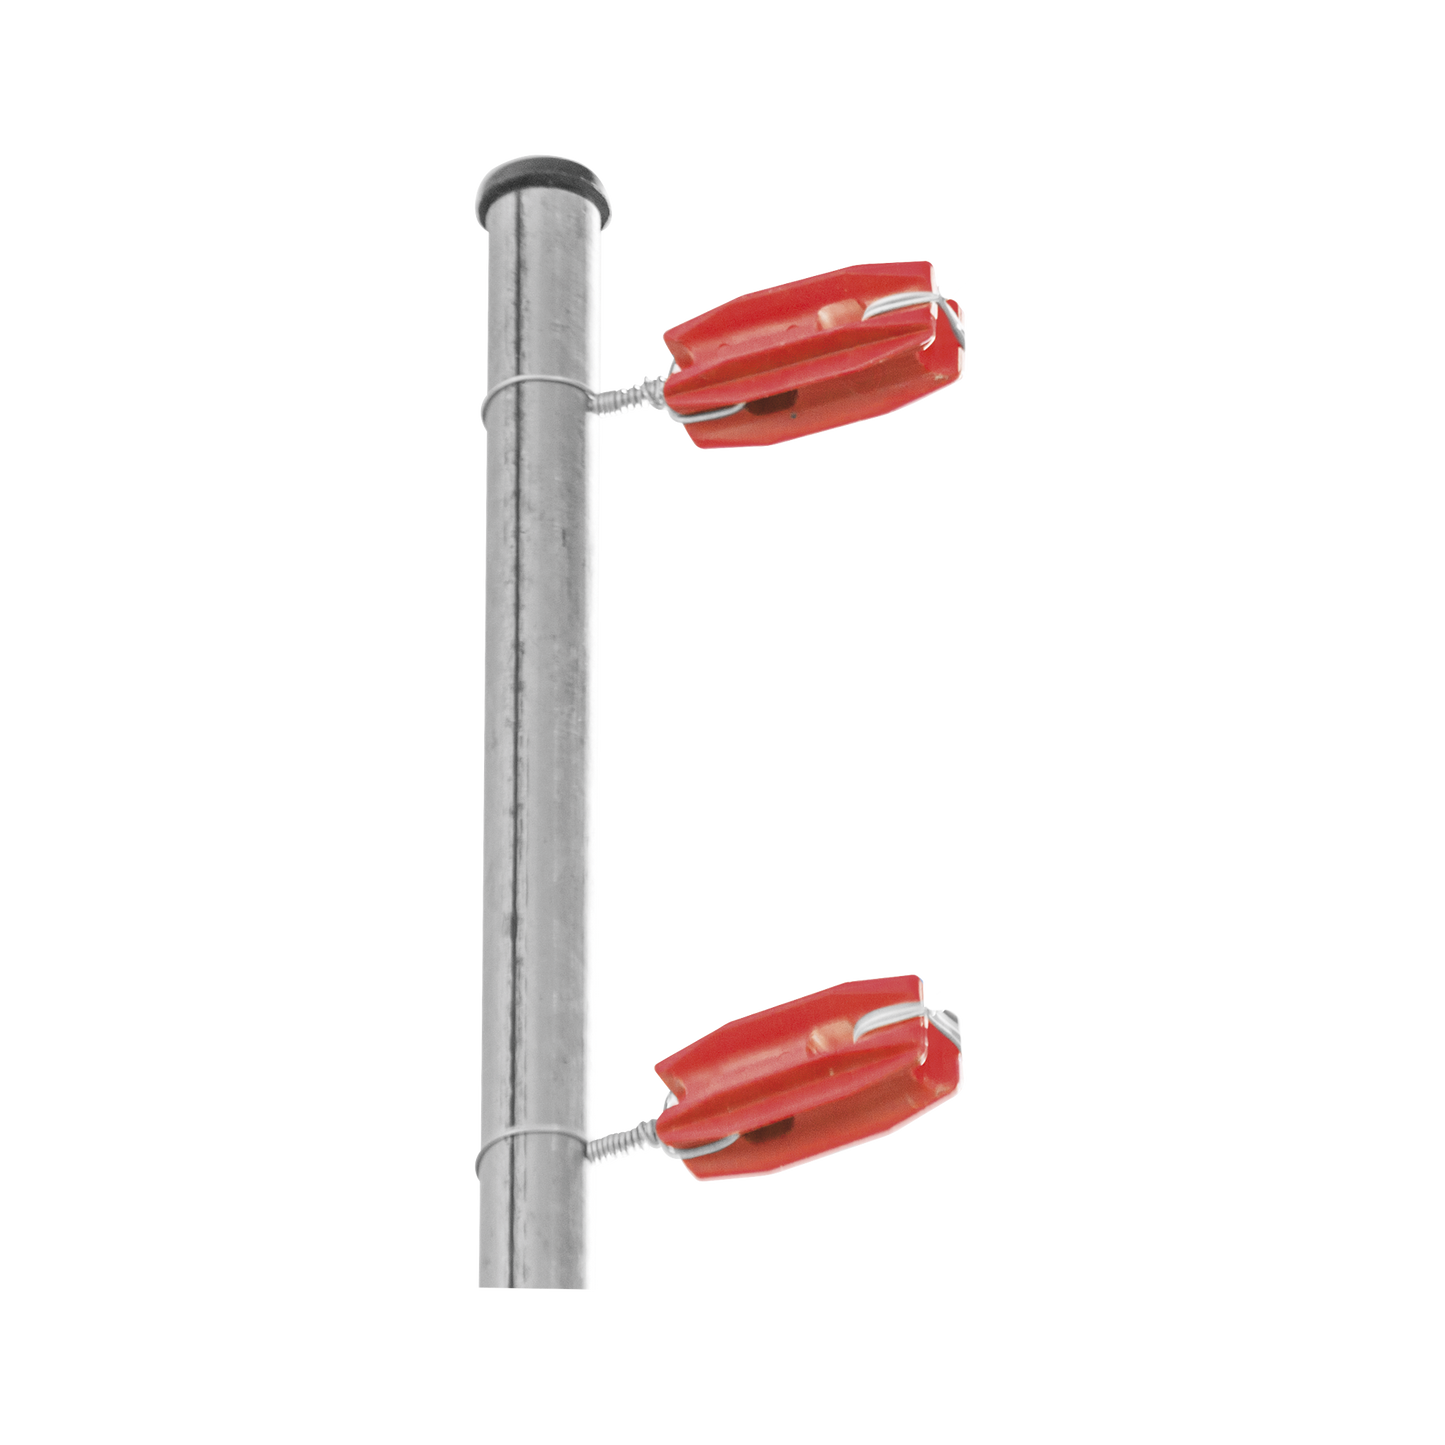 Aislador de color Rojo para postes de esquina de alta Resistencia con Anti UV de uso en cercos eléctricos